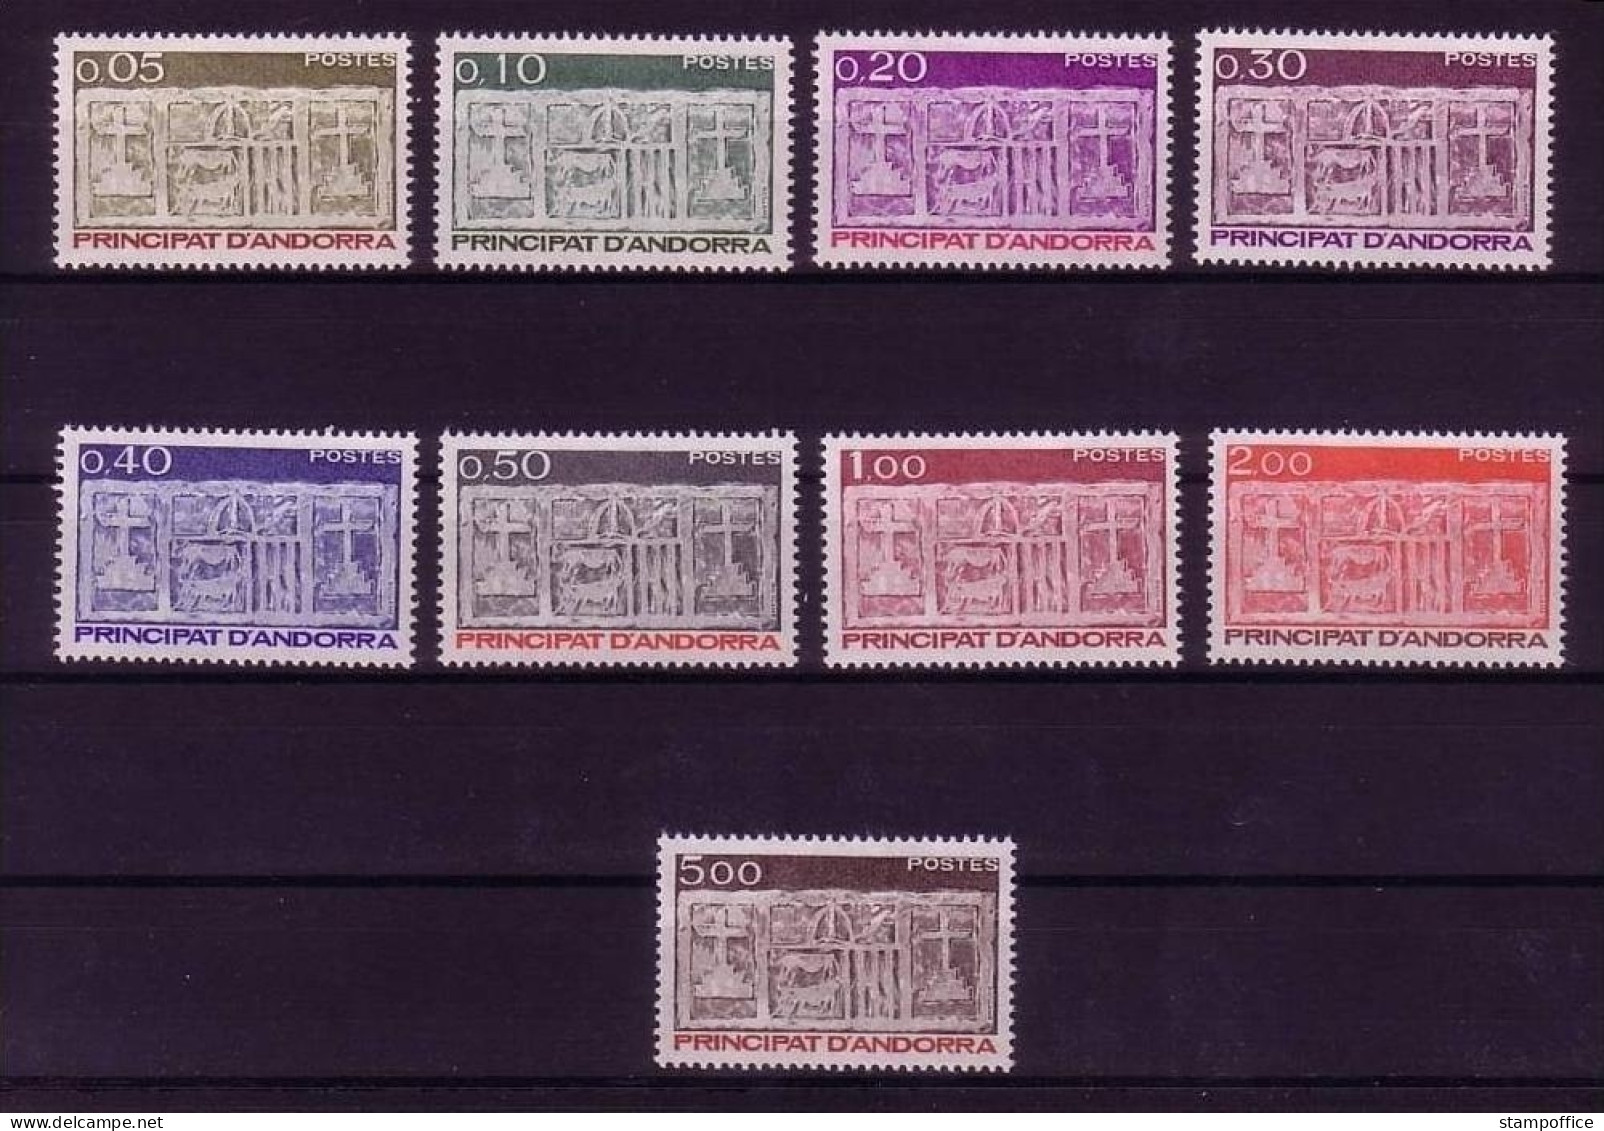 ANDORRA FRANZÖSISCH MI-NR. 337-345 POSTFRISCH(MINT) FREIMARKEN WAPPEN 1983 - Postzegels